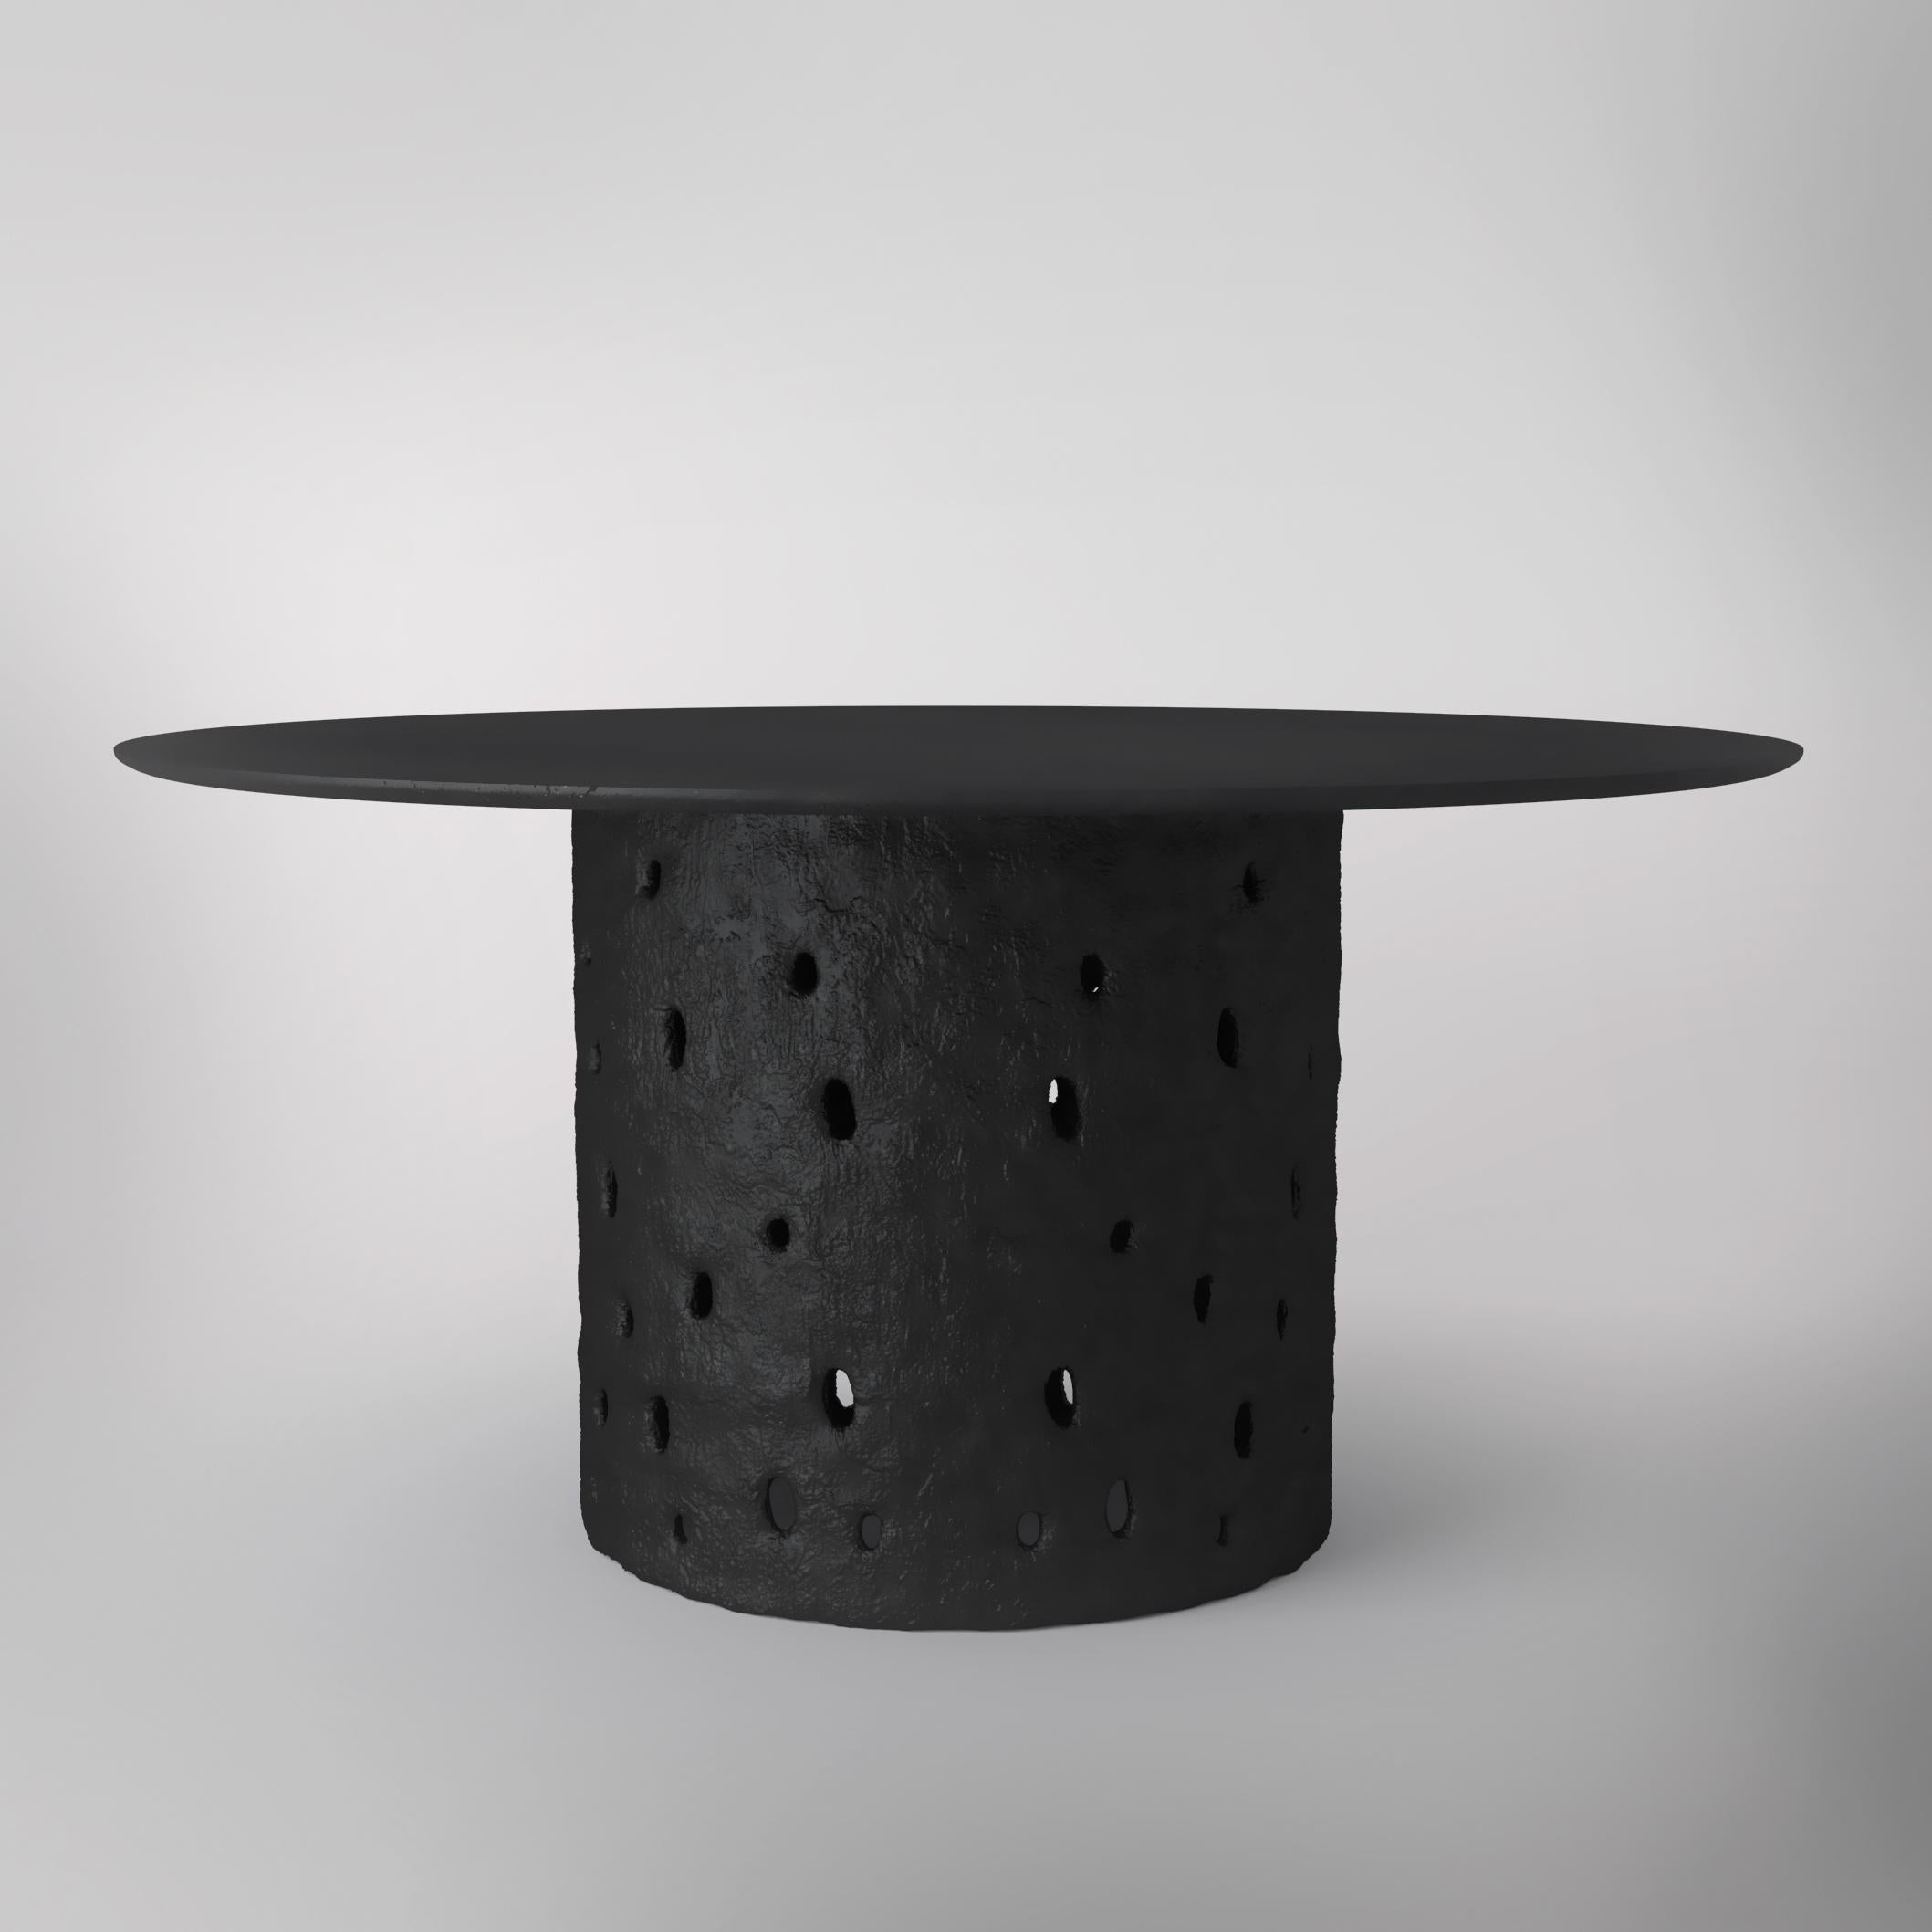 Table Ztista de Faina
Design/One : Victoriya Yakusha.
Dimensions : 150 cm x H 75 cm
Matériau : Cadre en acier recyclé et matériau vivant ZTISTA - un mélange de cellulose, d'argile, de copeaux de bois de fibre de lin, de couverture en biopolymère.